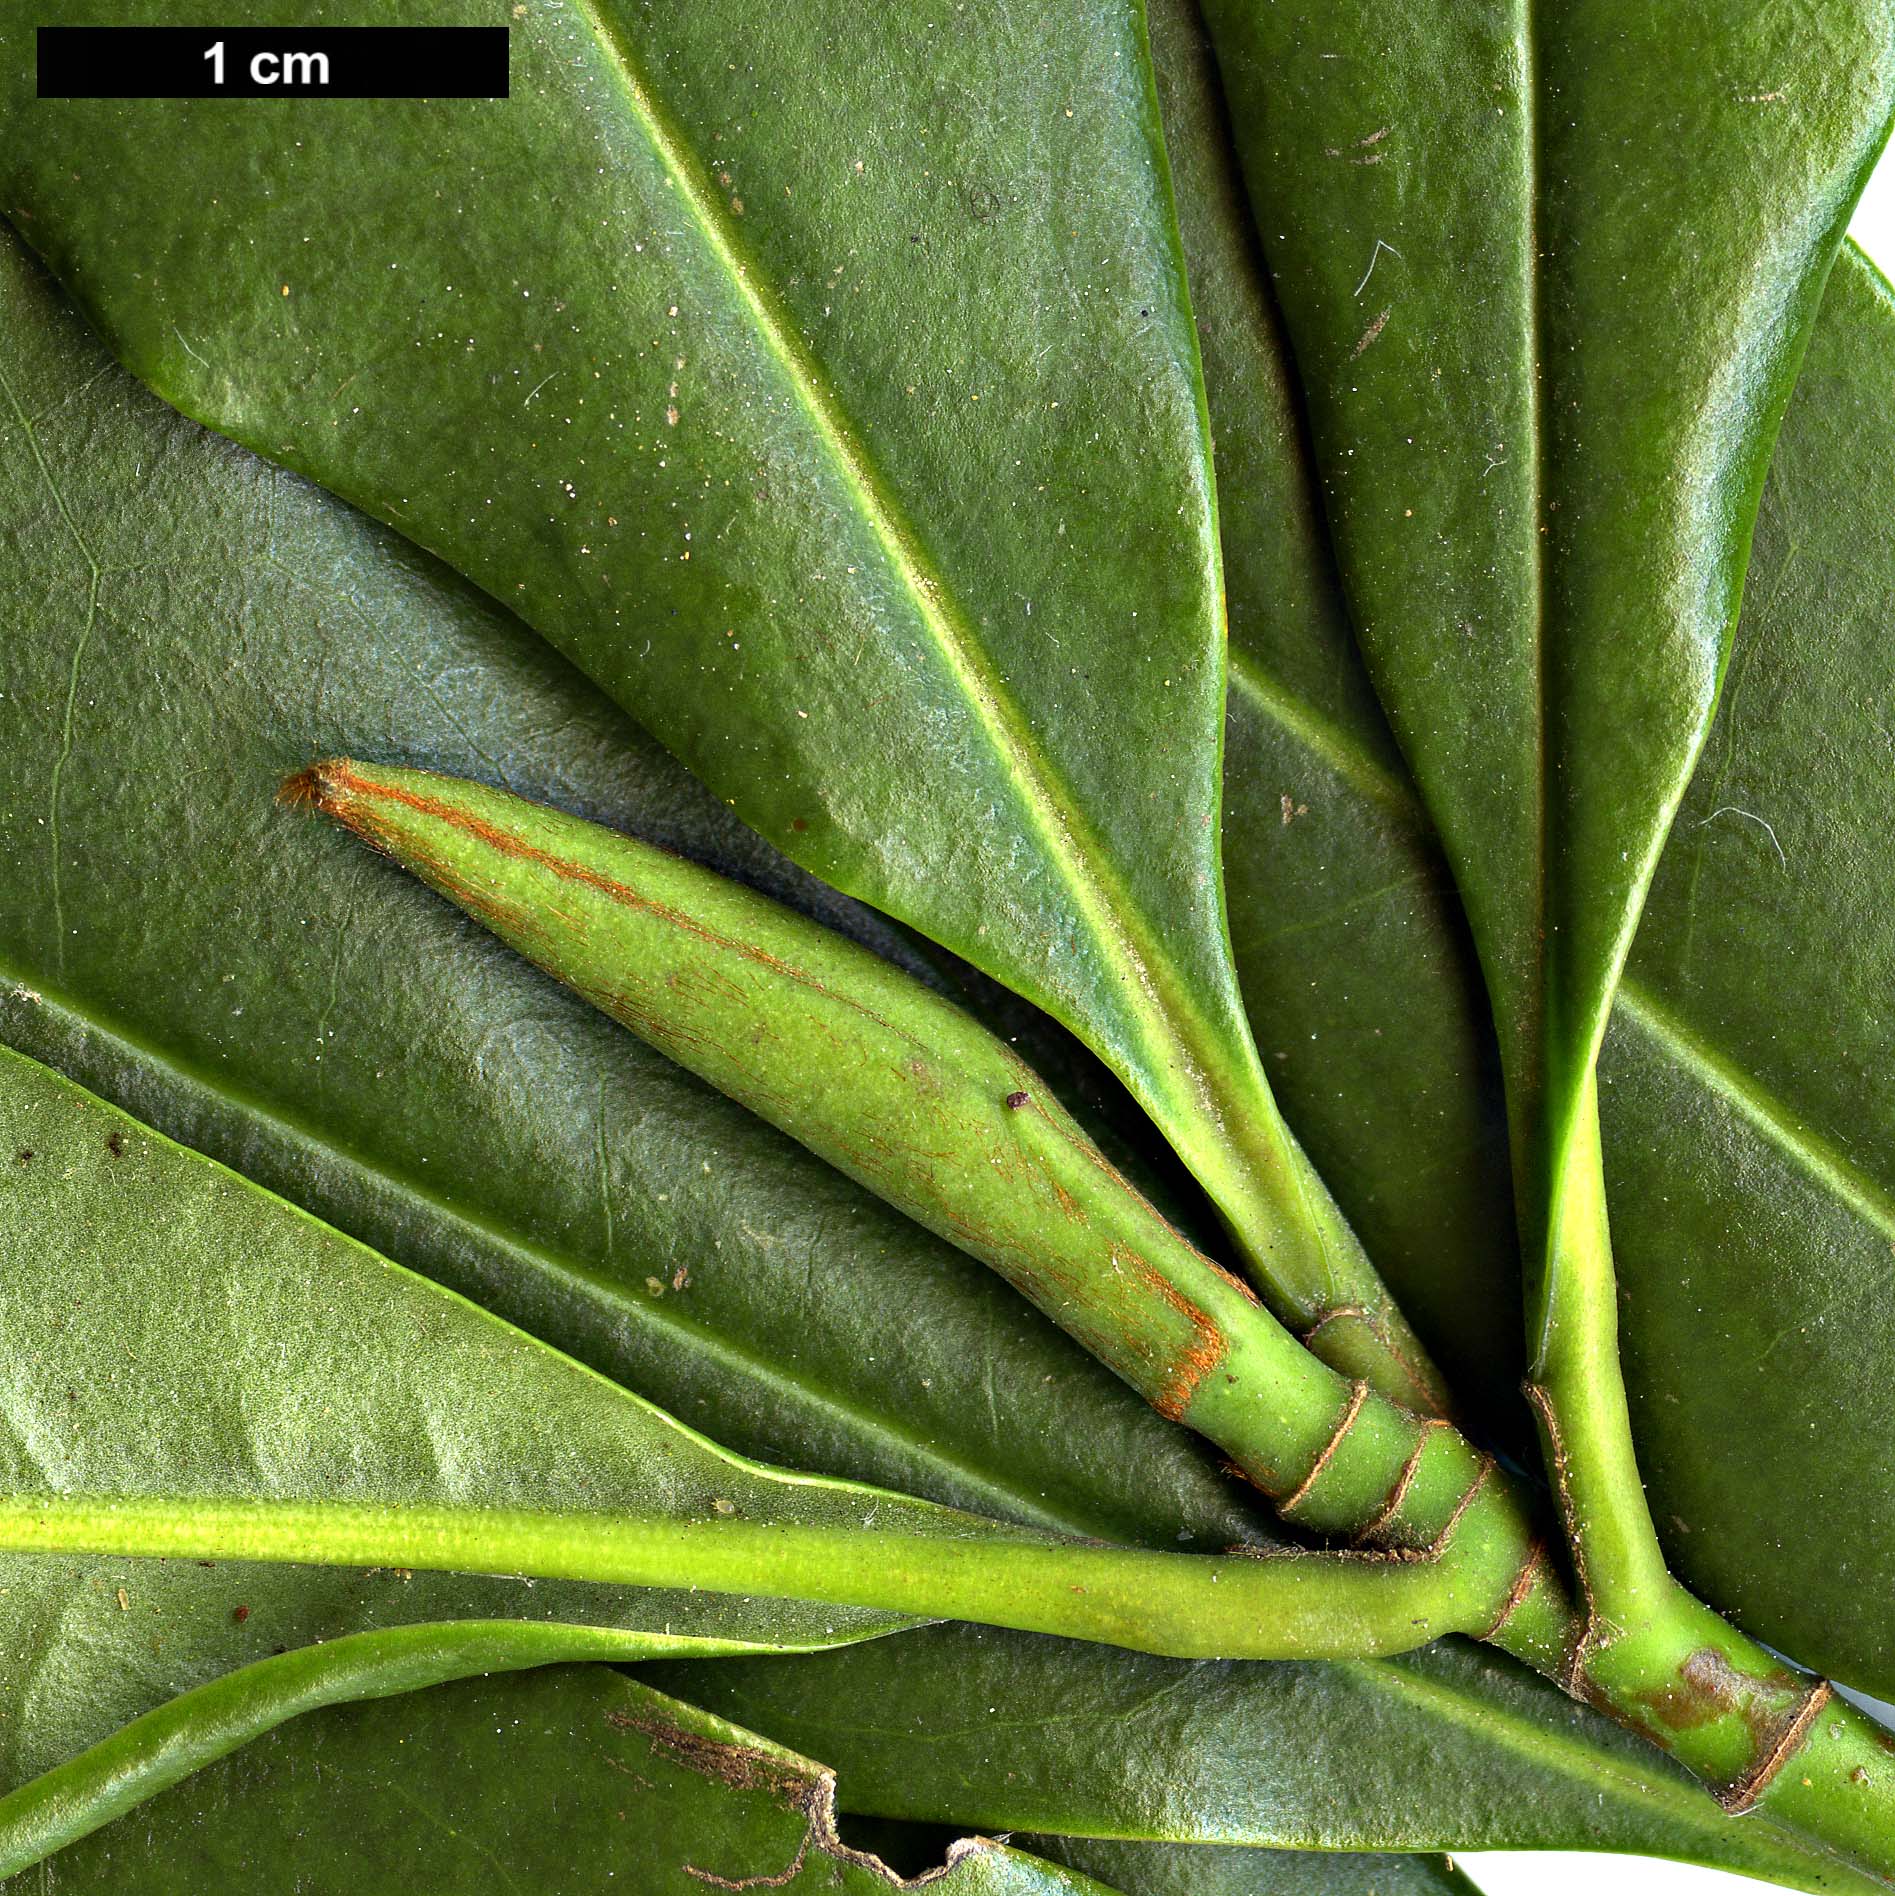 High resolution image: Family: Magnoliaceae - Genus: Magnolia - Taxon: insignis